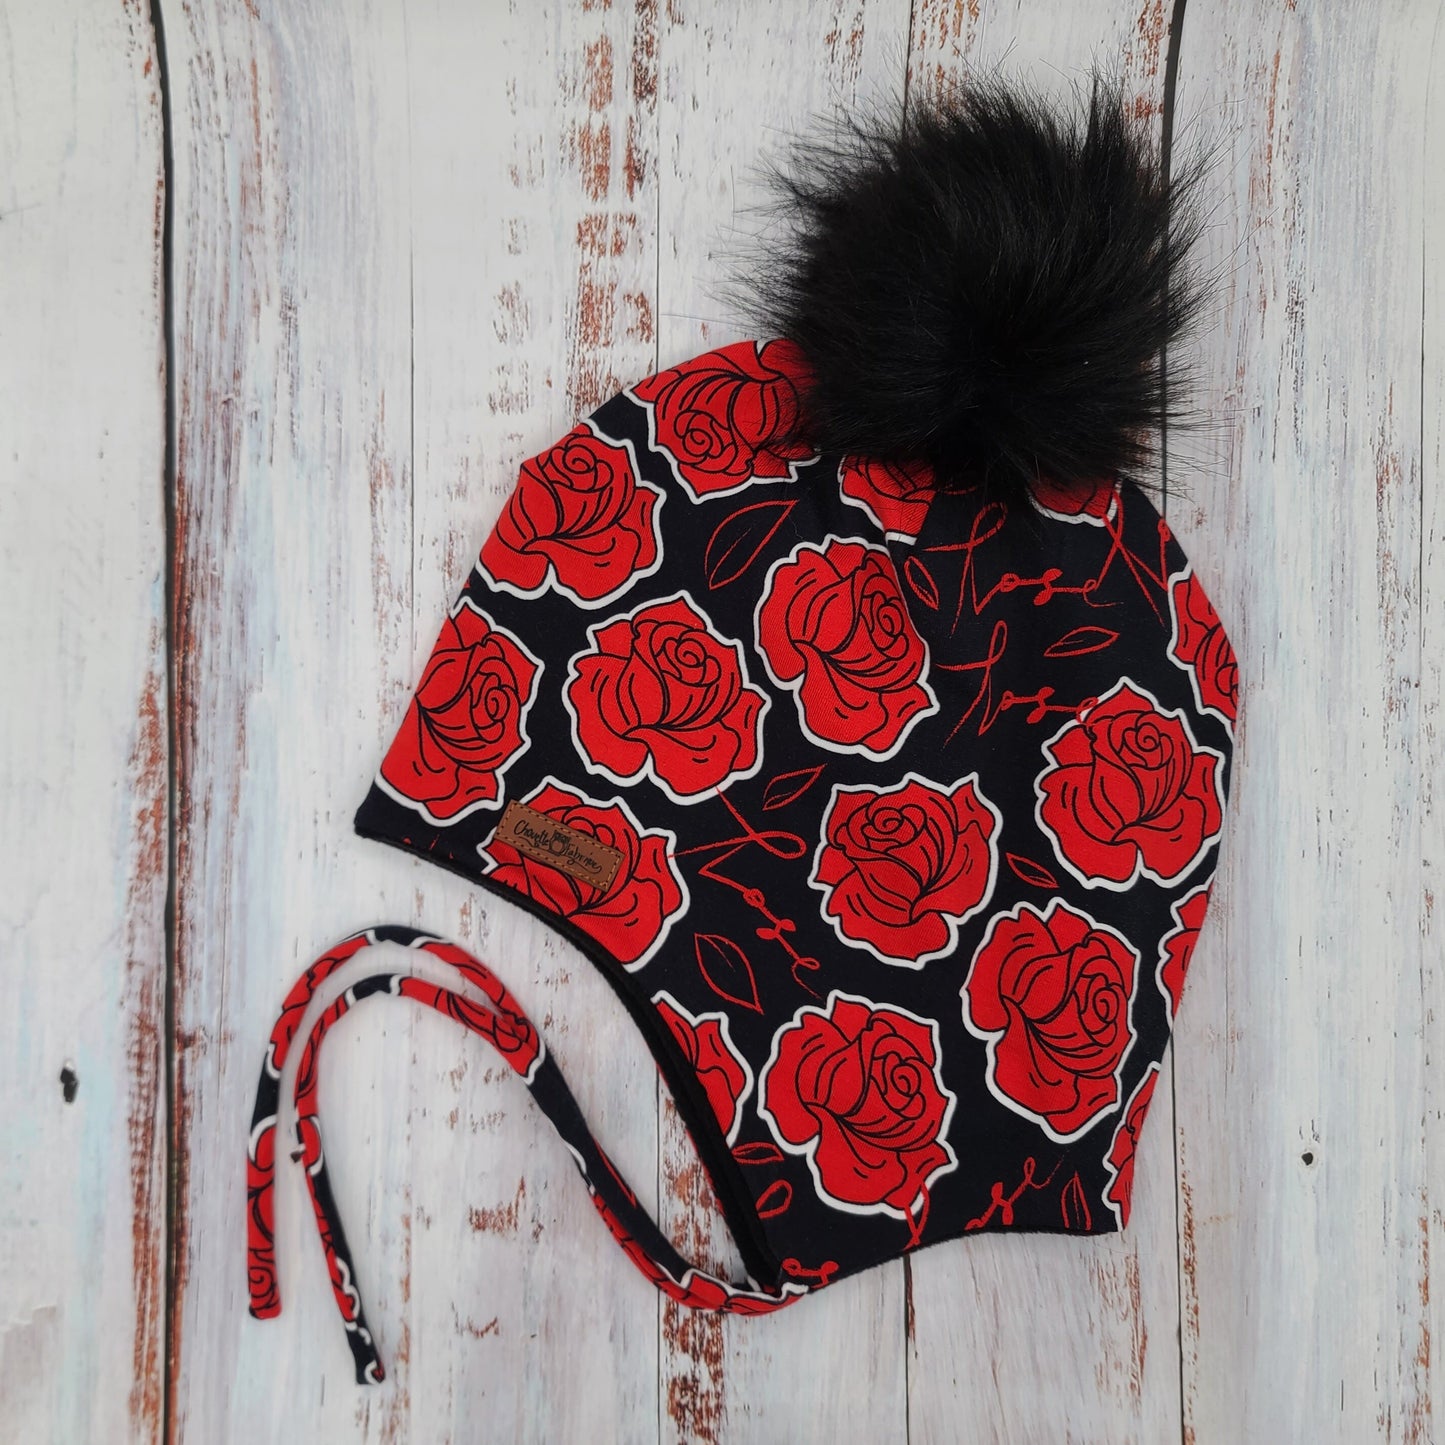 Tuque Printemps/Automne (JERSEY) avec Cordons  Pompon amovible - Roses rouges sur fond noir